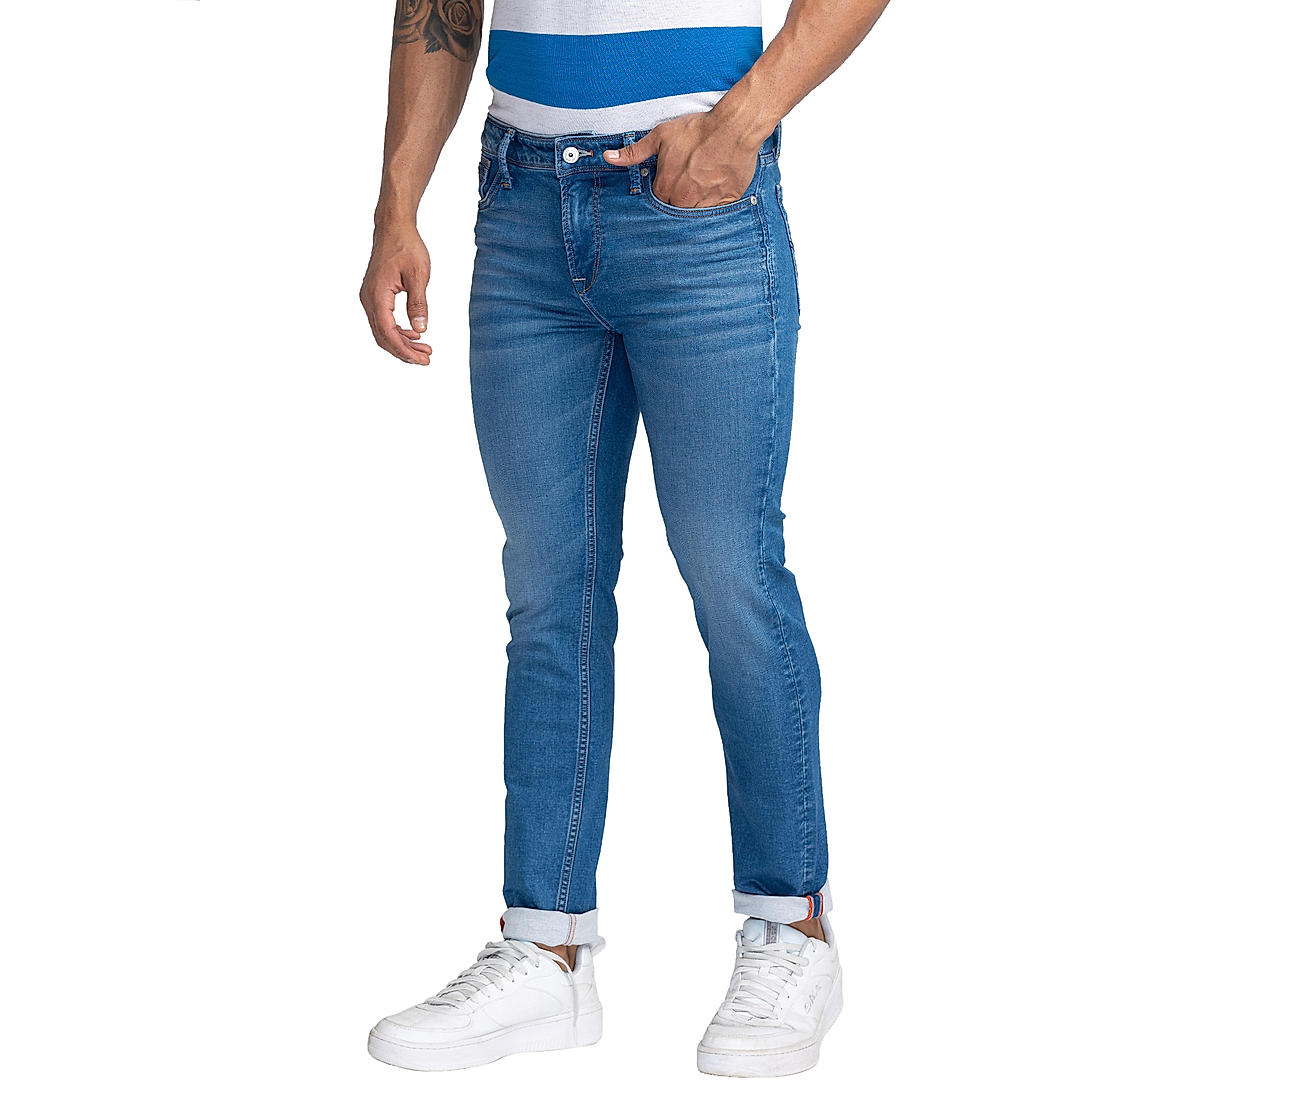 Buy Blue Solid Ankle Fit Jeans for Men Online at Killer Jeans | 504946